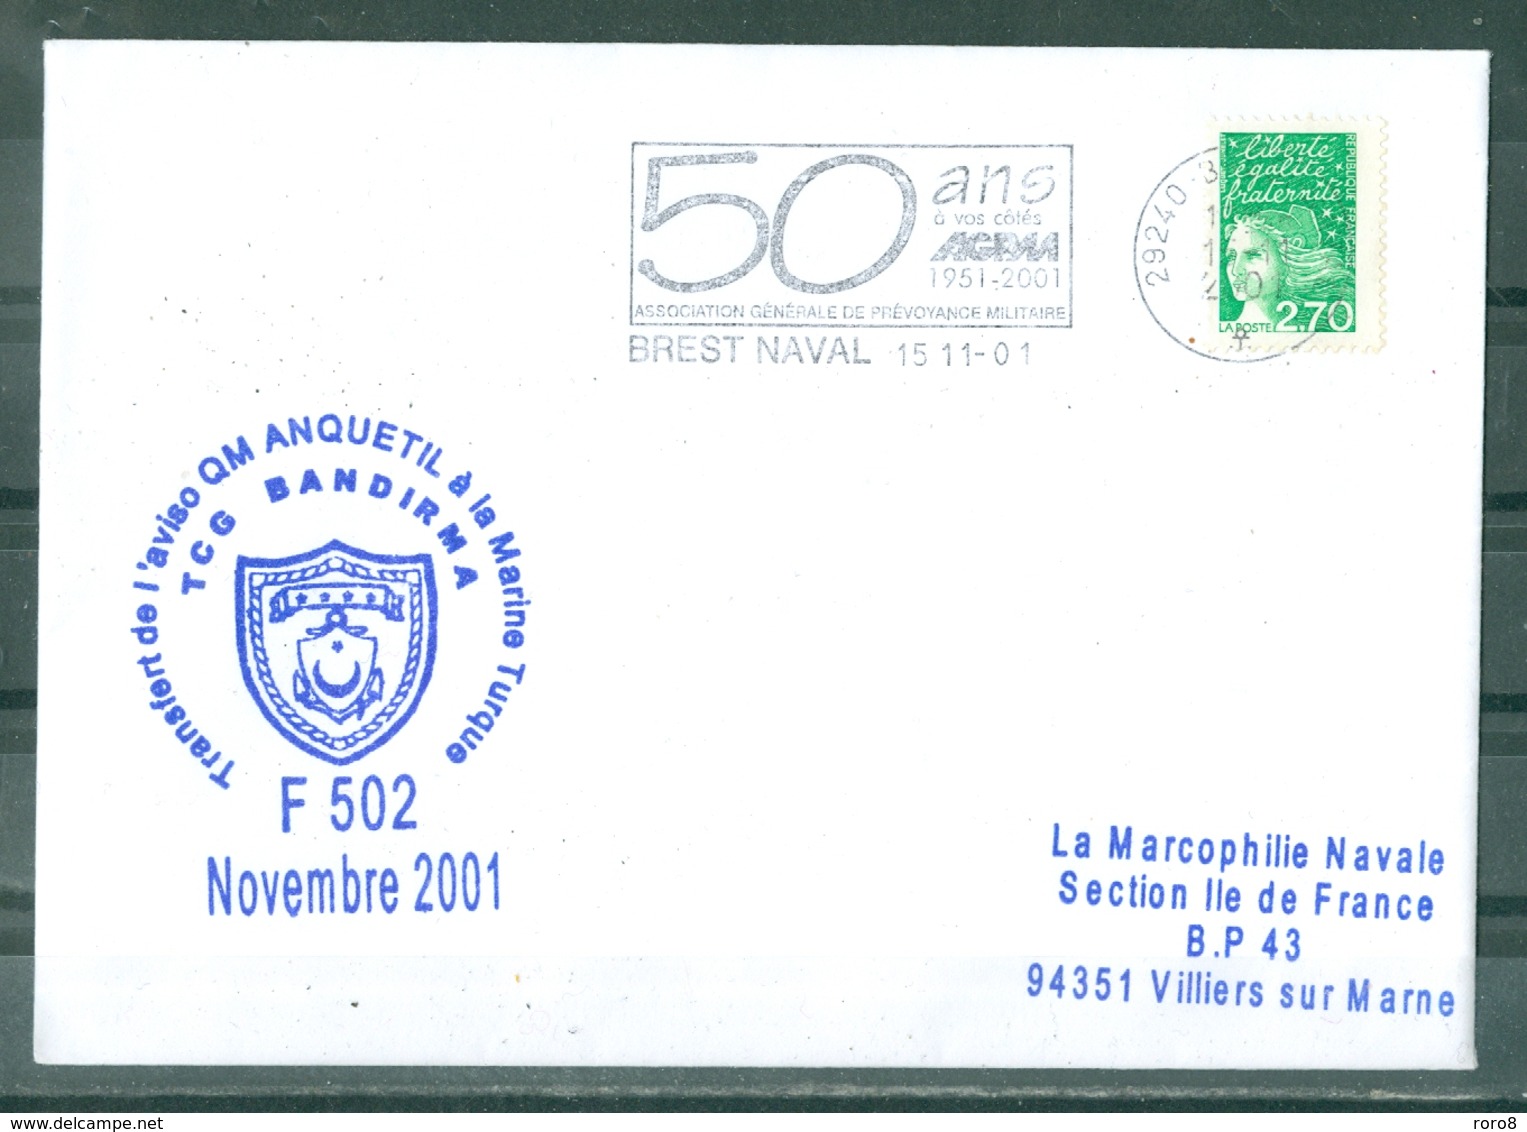 Transfert De L'aviso Q.M. ANQUETIL à La Marine Turque TCG BANDIRMA F 502 Novembre 2001 Flamme Brest Naval Du 15-11-01 - Poste Navale